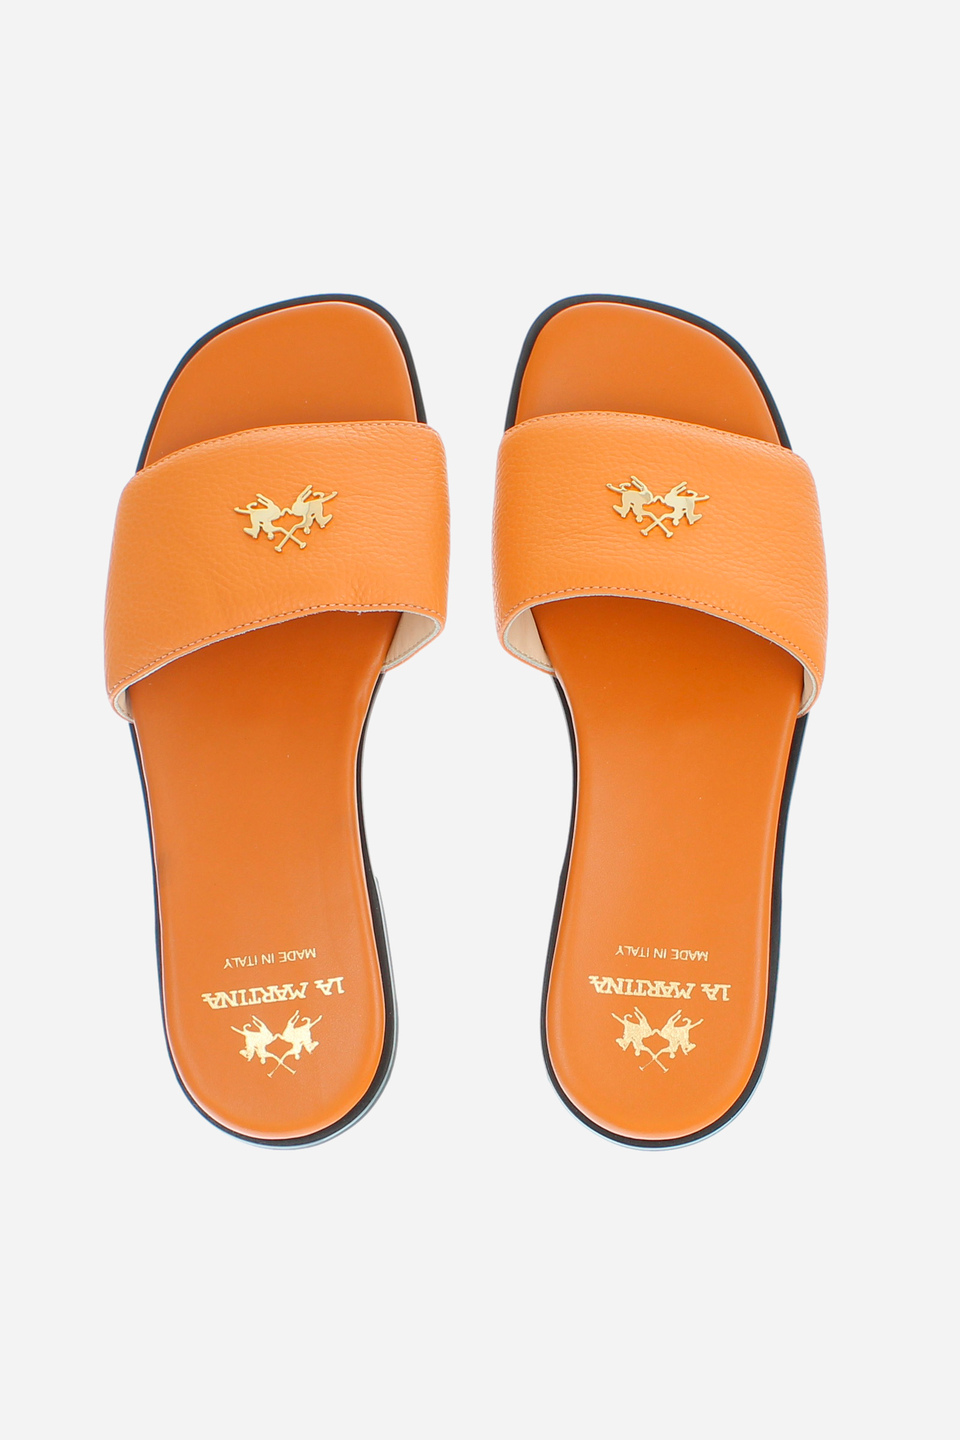 Damen-Sandale aus Leder | La Martina - Official Online Shop